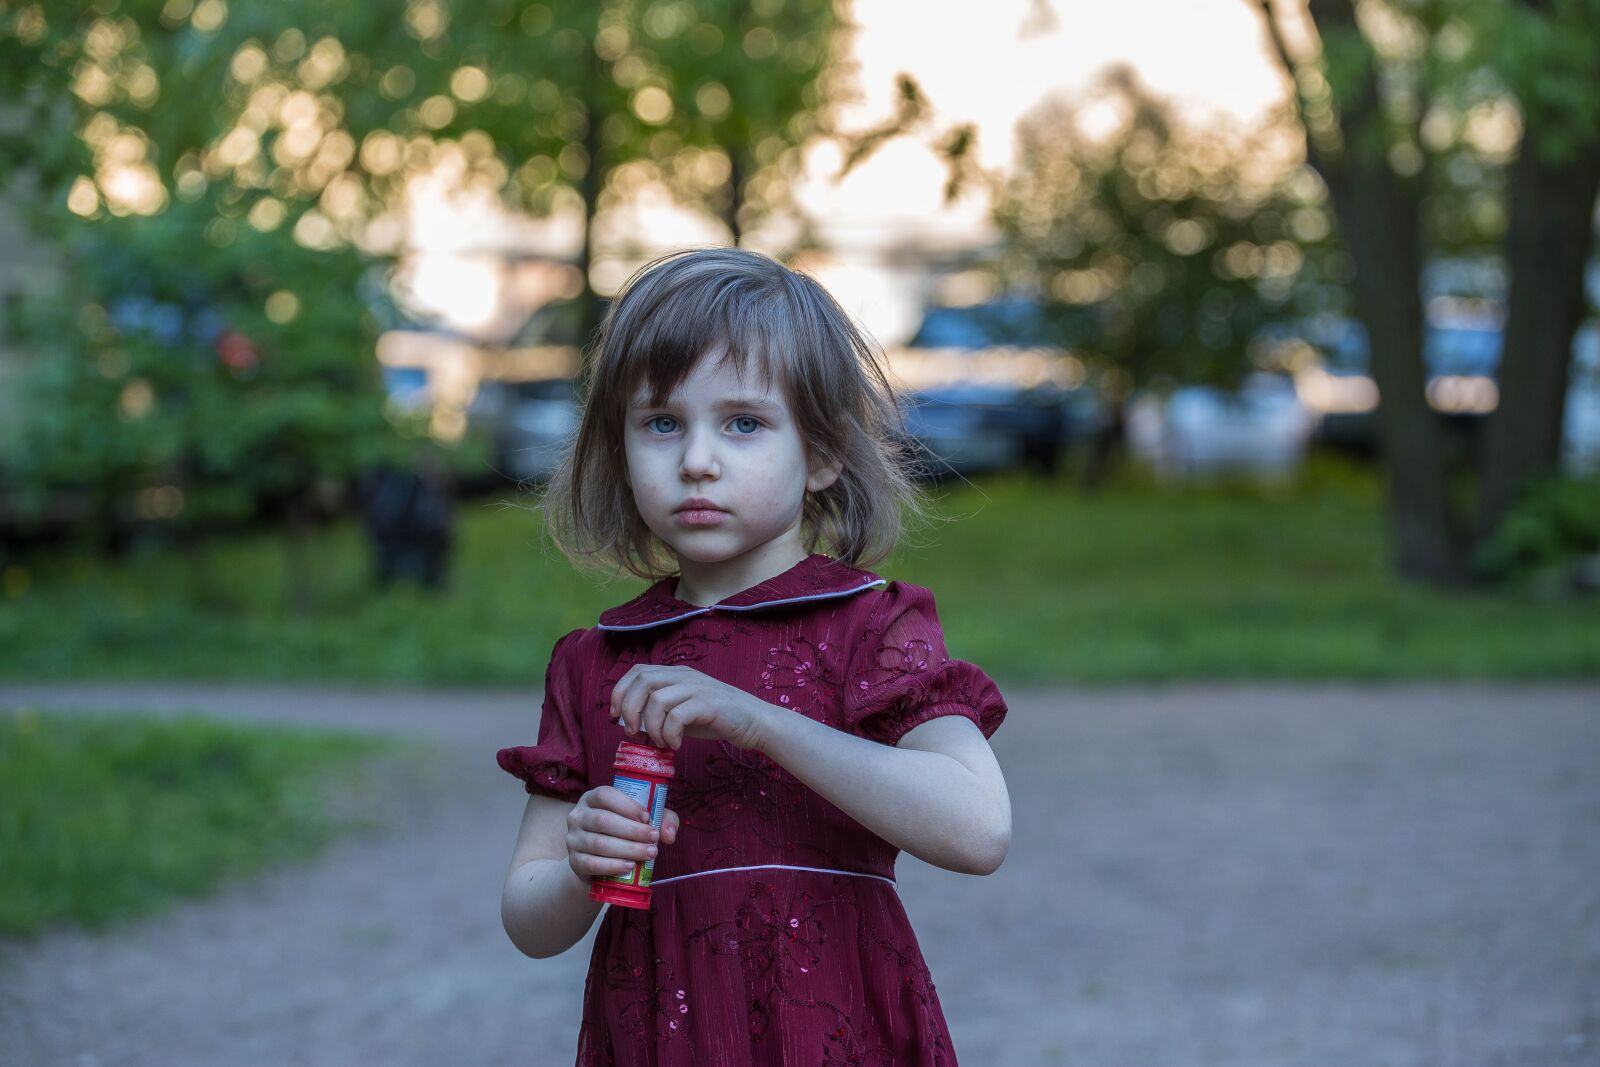 Canon EOS 6D sample photo. Girl, baby, person photography